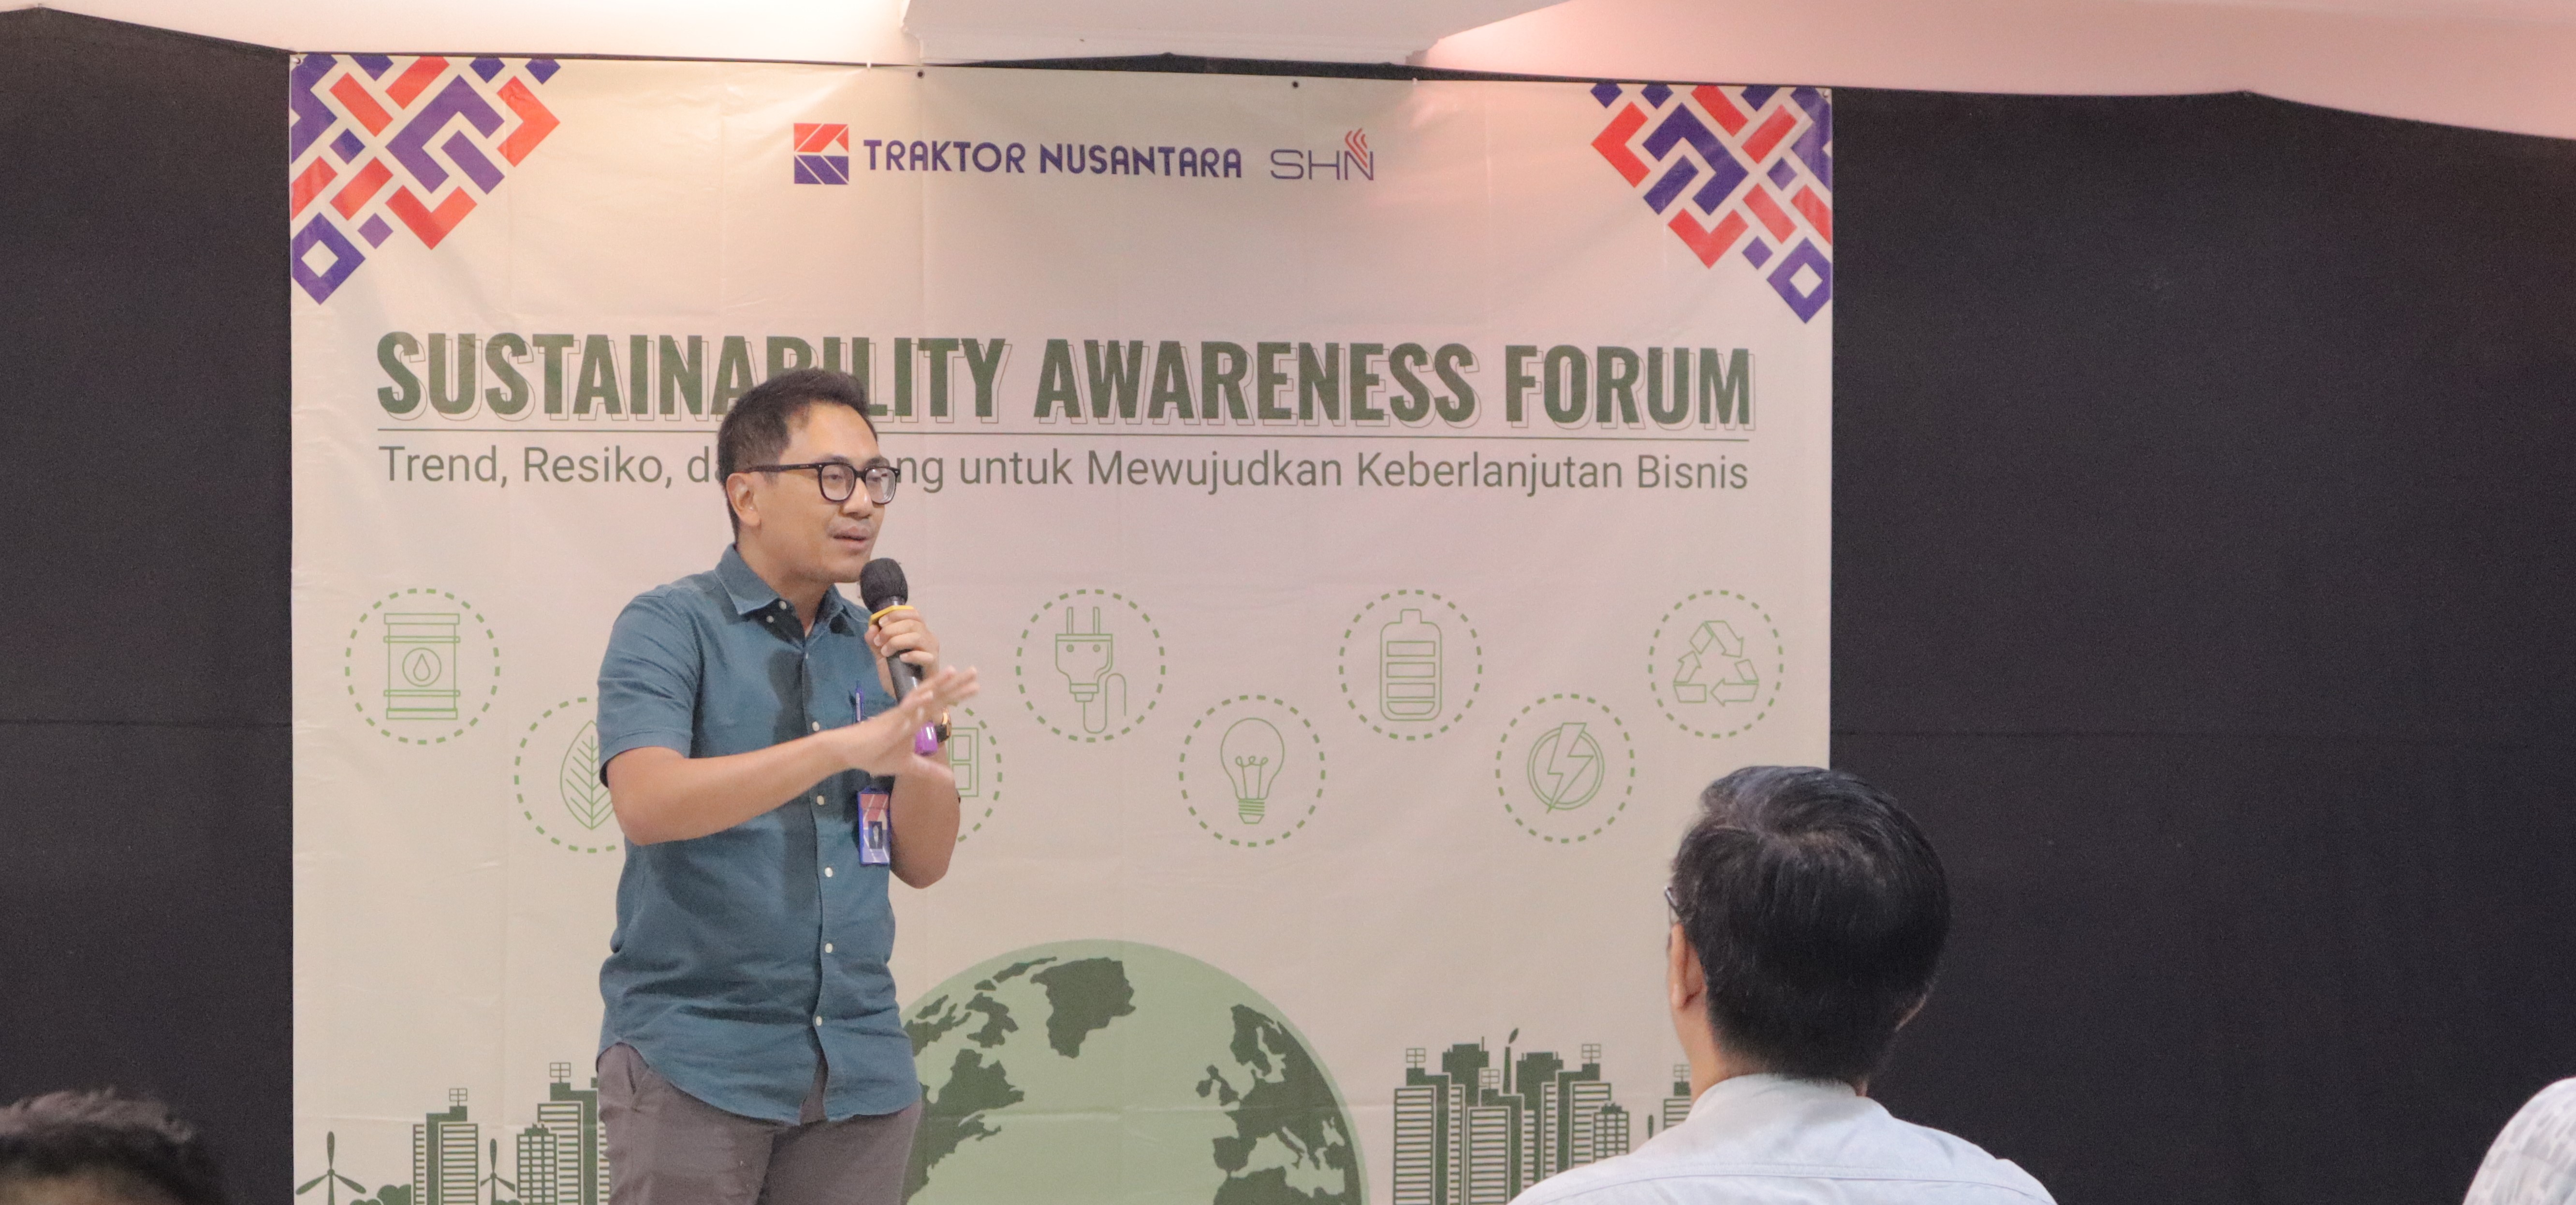 4. traknus adakan sustainability awareness forum